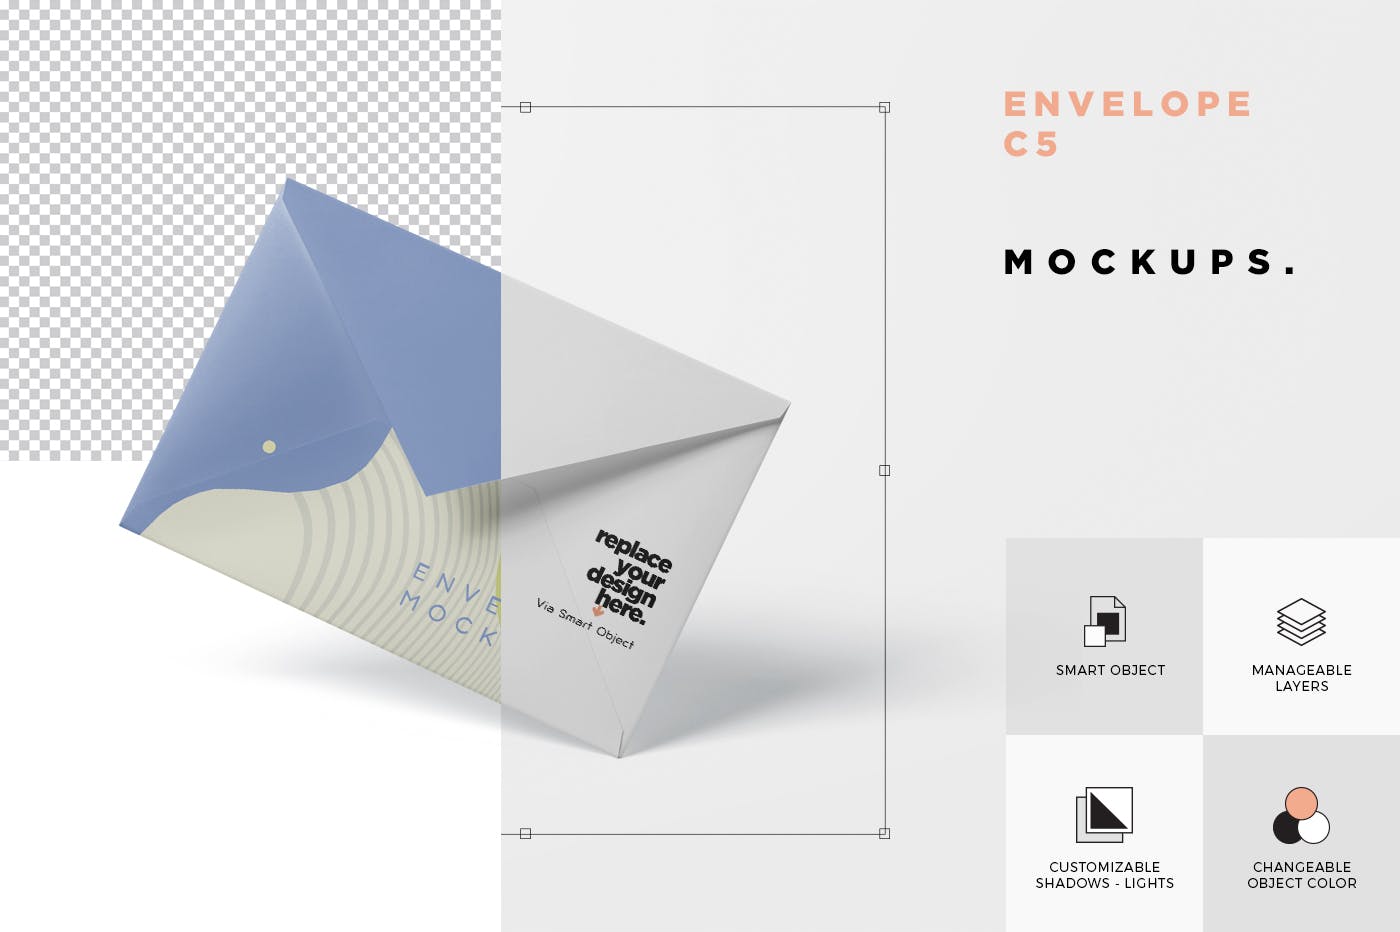 高端企业信封外观设计图16图库精选模板 Envelope C5 – C6 Mock-Up Set插图(6)